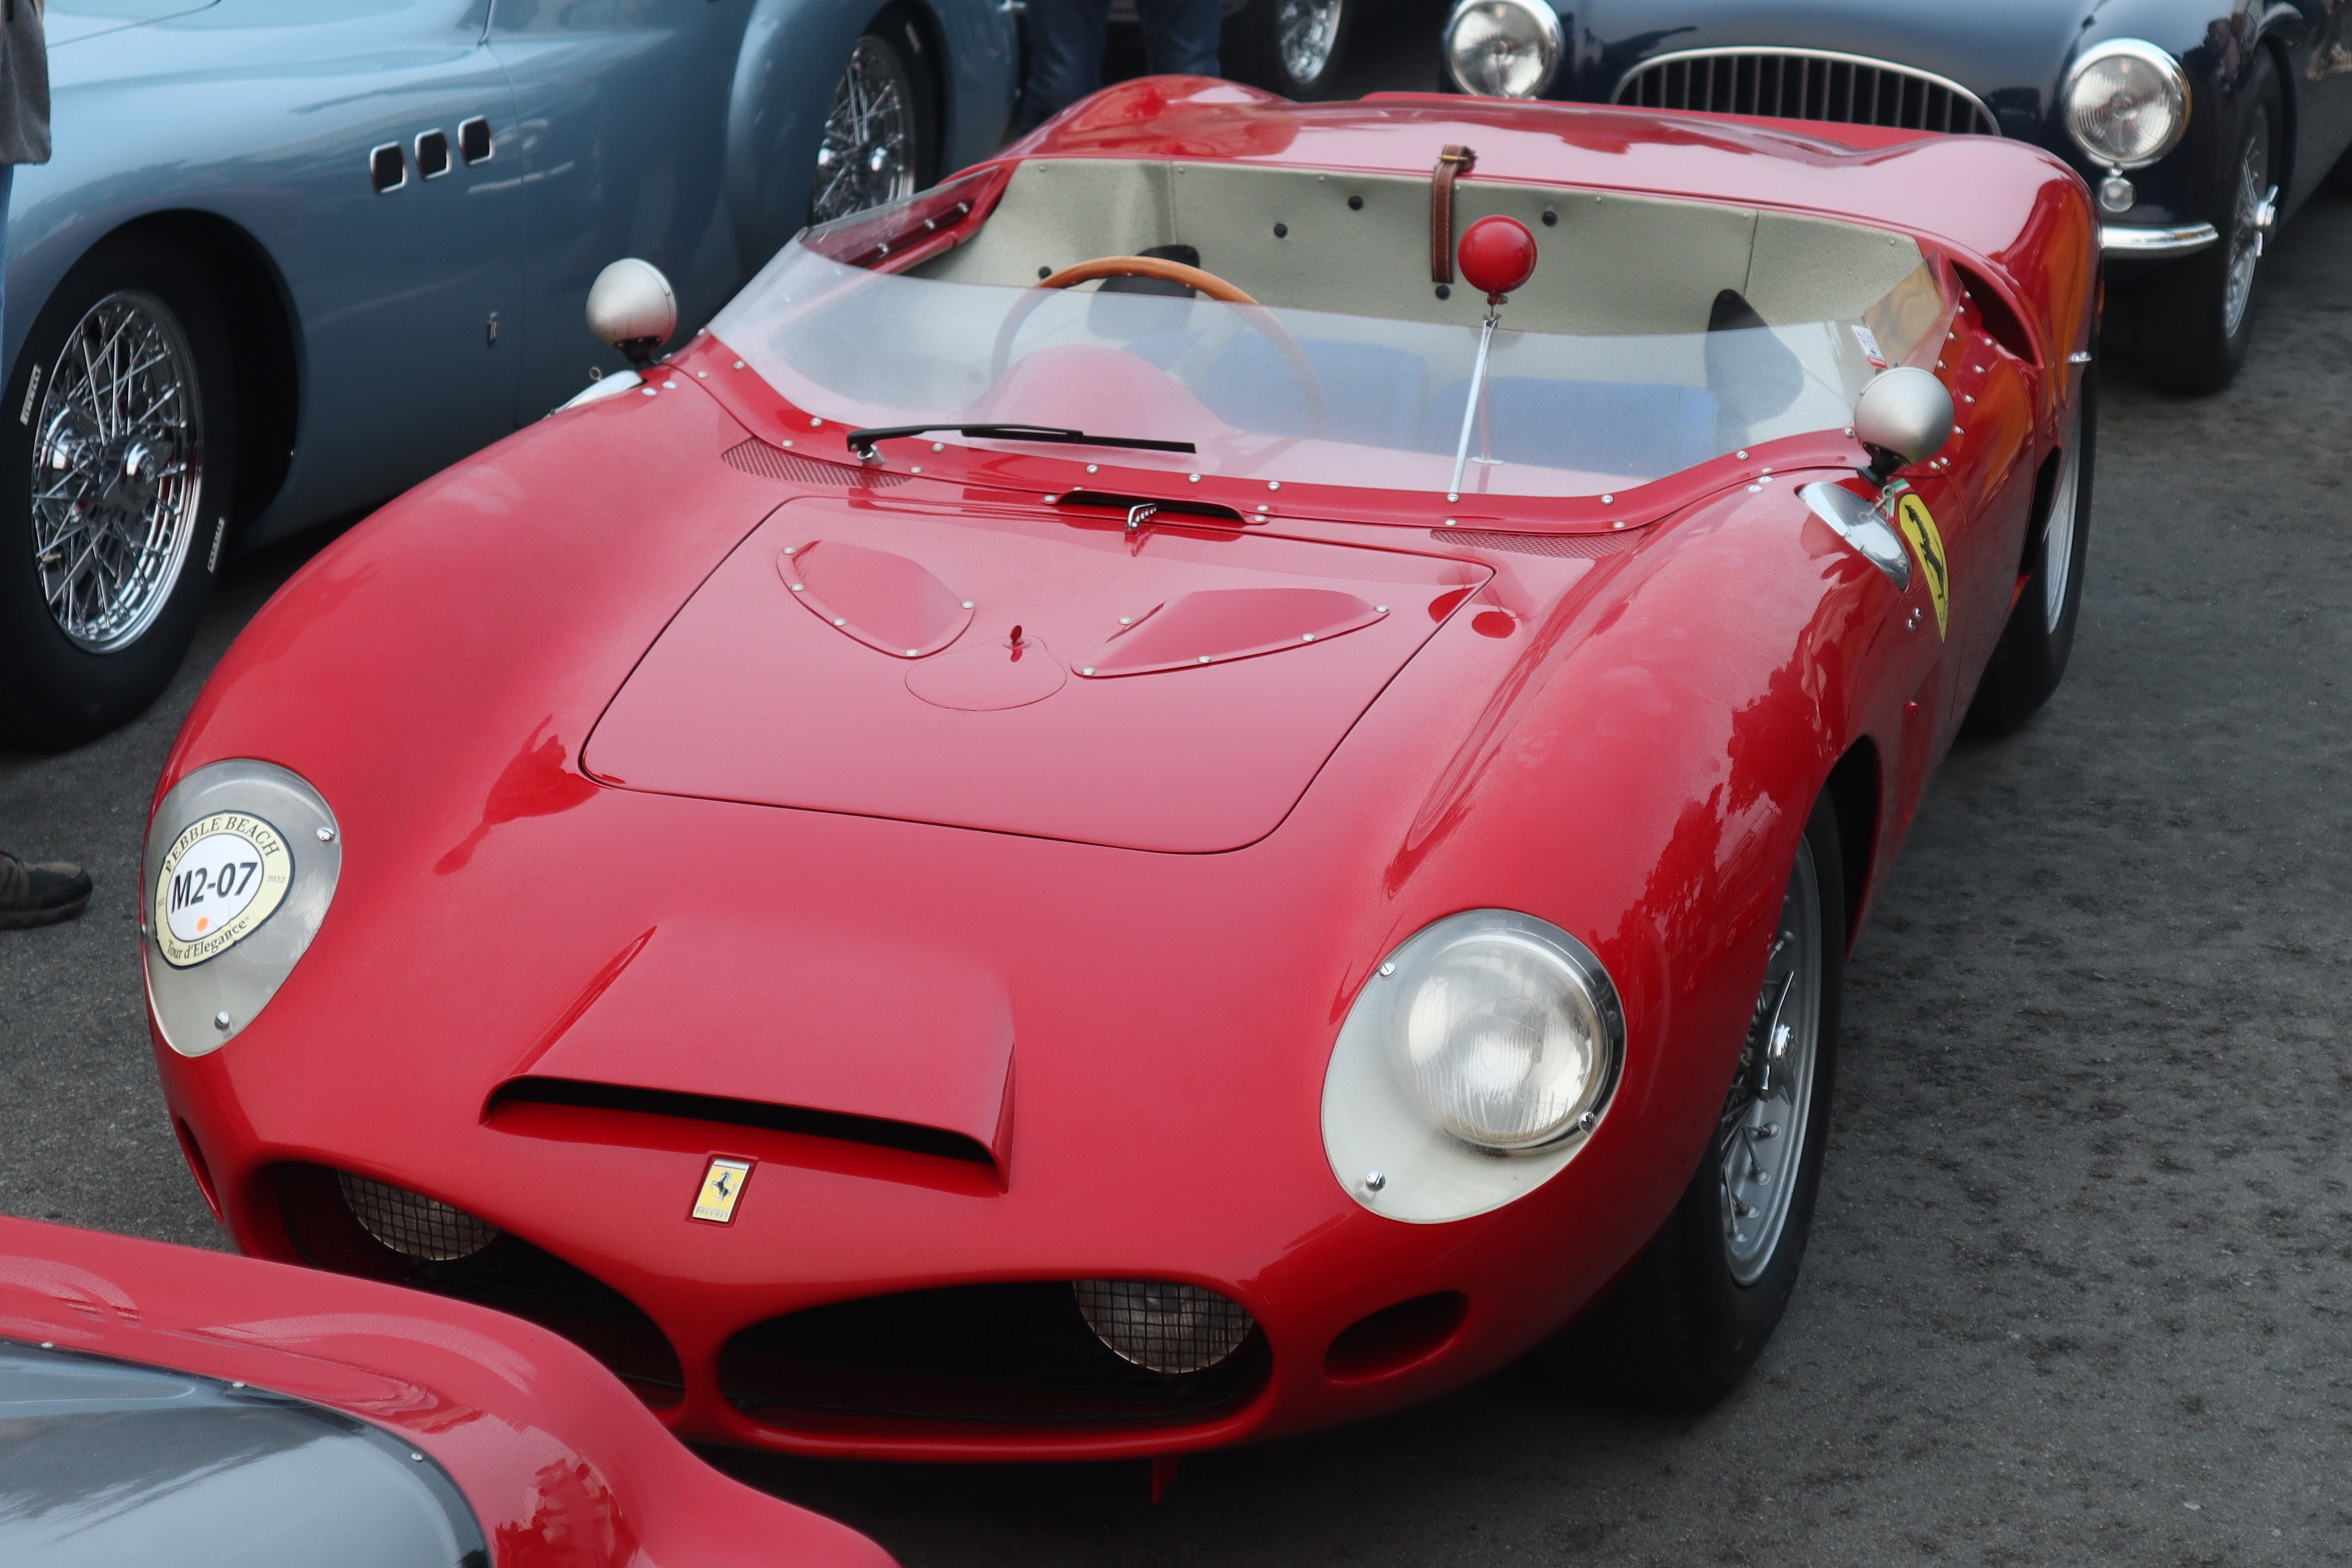 Ferrari 1962. Феррари 1962. Ferrari 196. Ferrari 01962. Ferrari 1962 г.в..